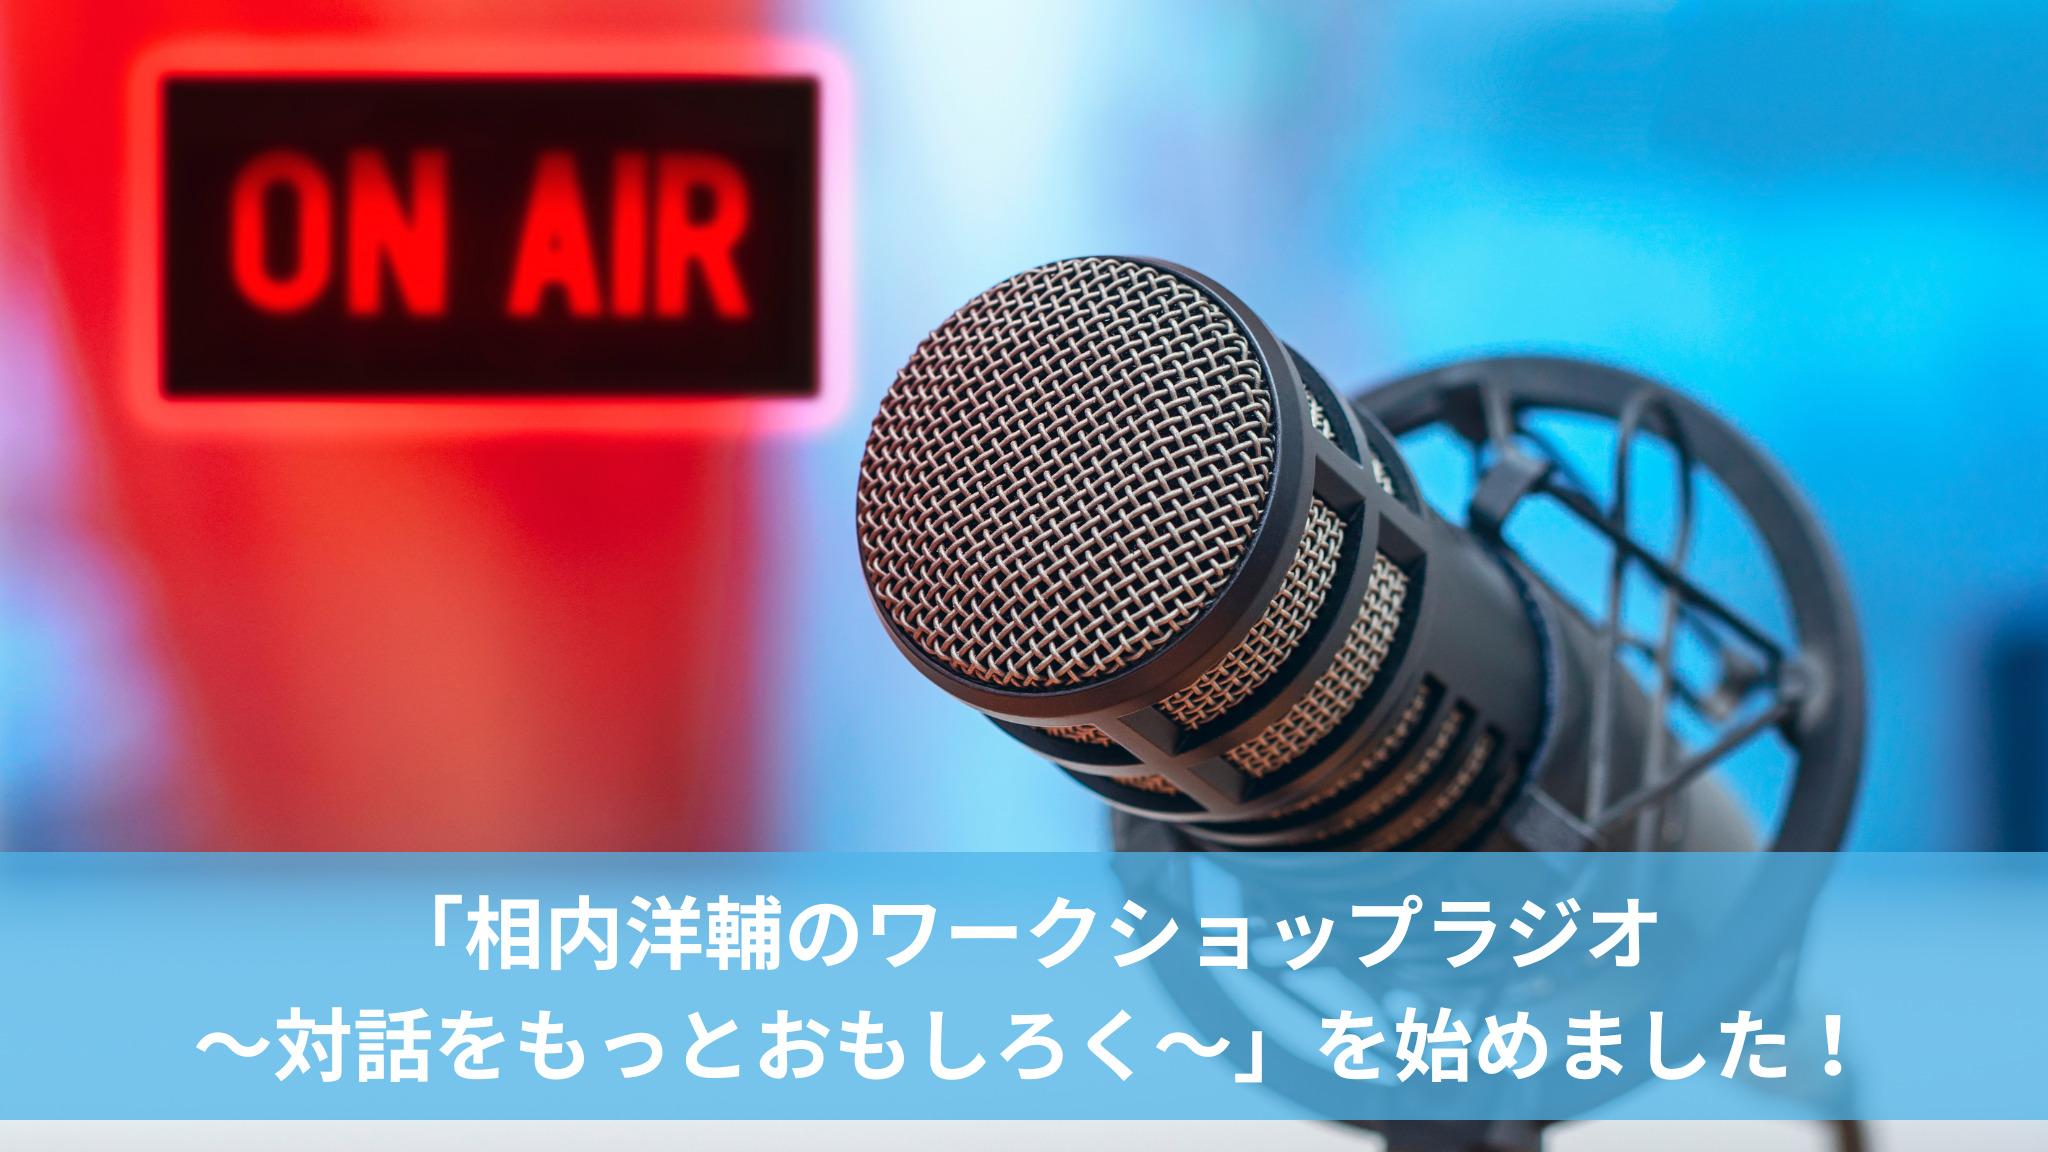 「相内洋輔のワークショップラジオ 〜対話をもっとおもしろく〜」を始めました！